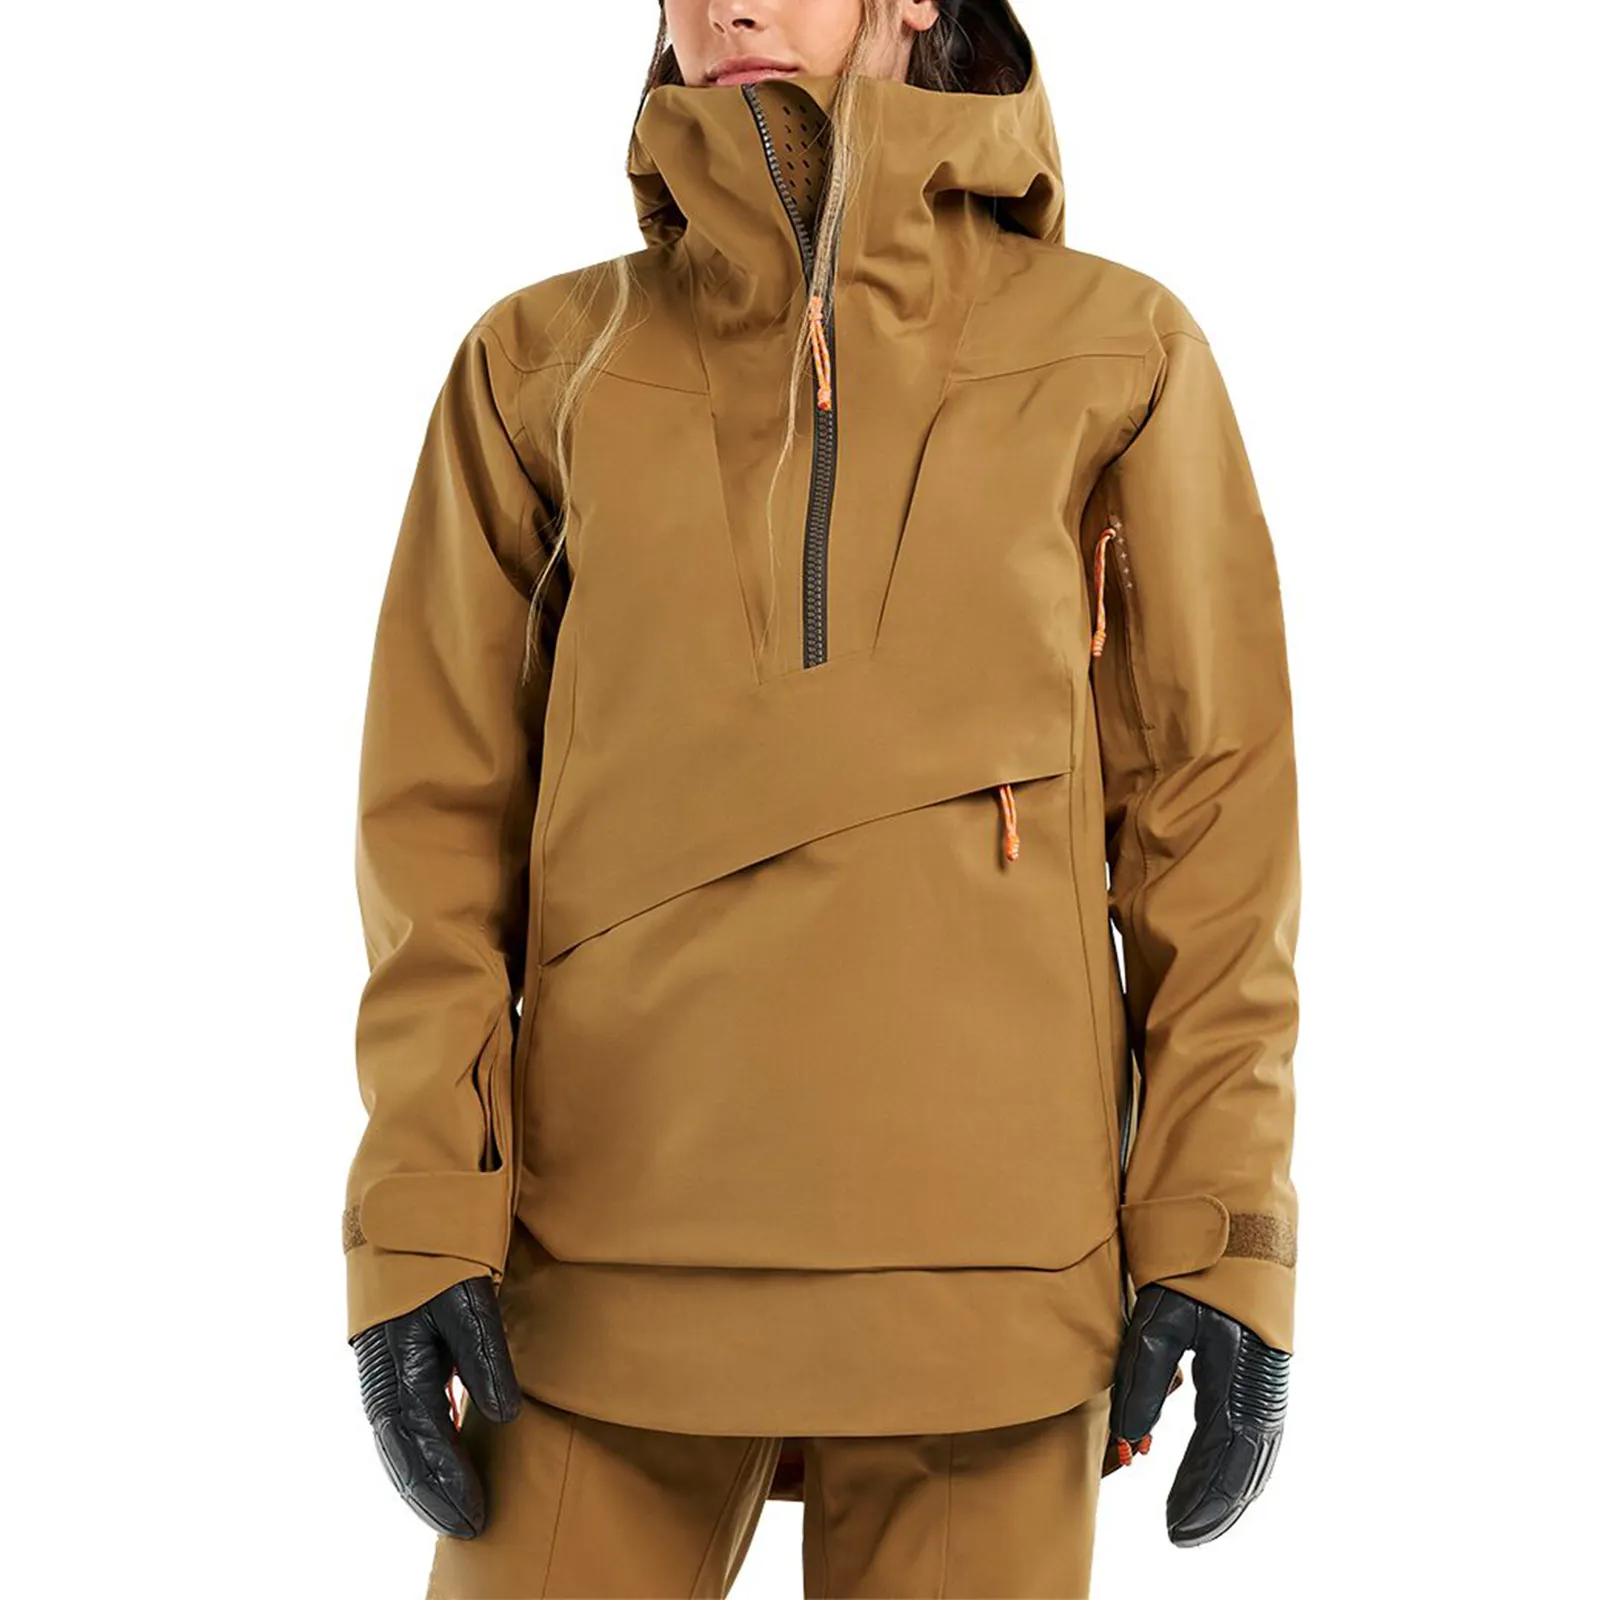 Fábrica Custom Caminhadas Ski Sportswear Impermeável Outdoor Inverno Homens Roupas Caminhadas Ski Windbreaker Neve Jaqueta